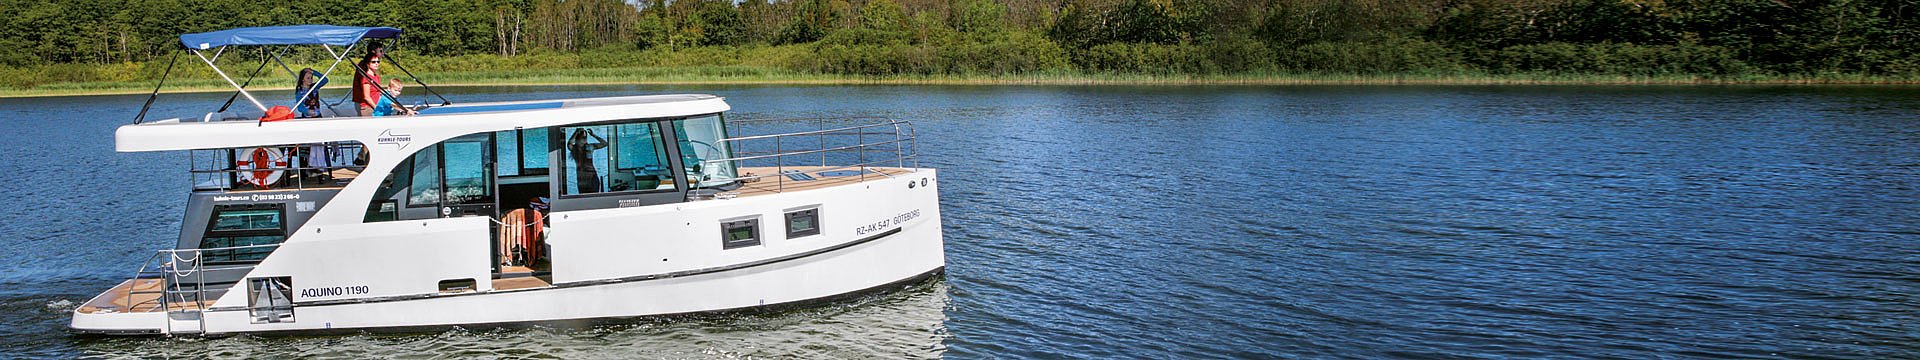 das Hausboot Aquino unterwegs auf einem kleinen See der brandenburgischen Seenplatte